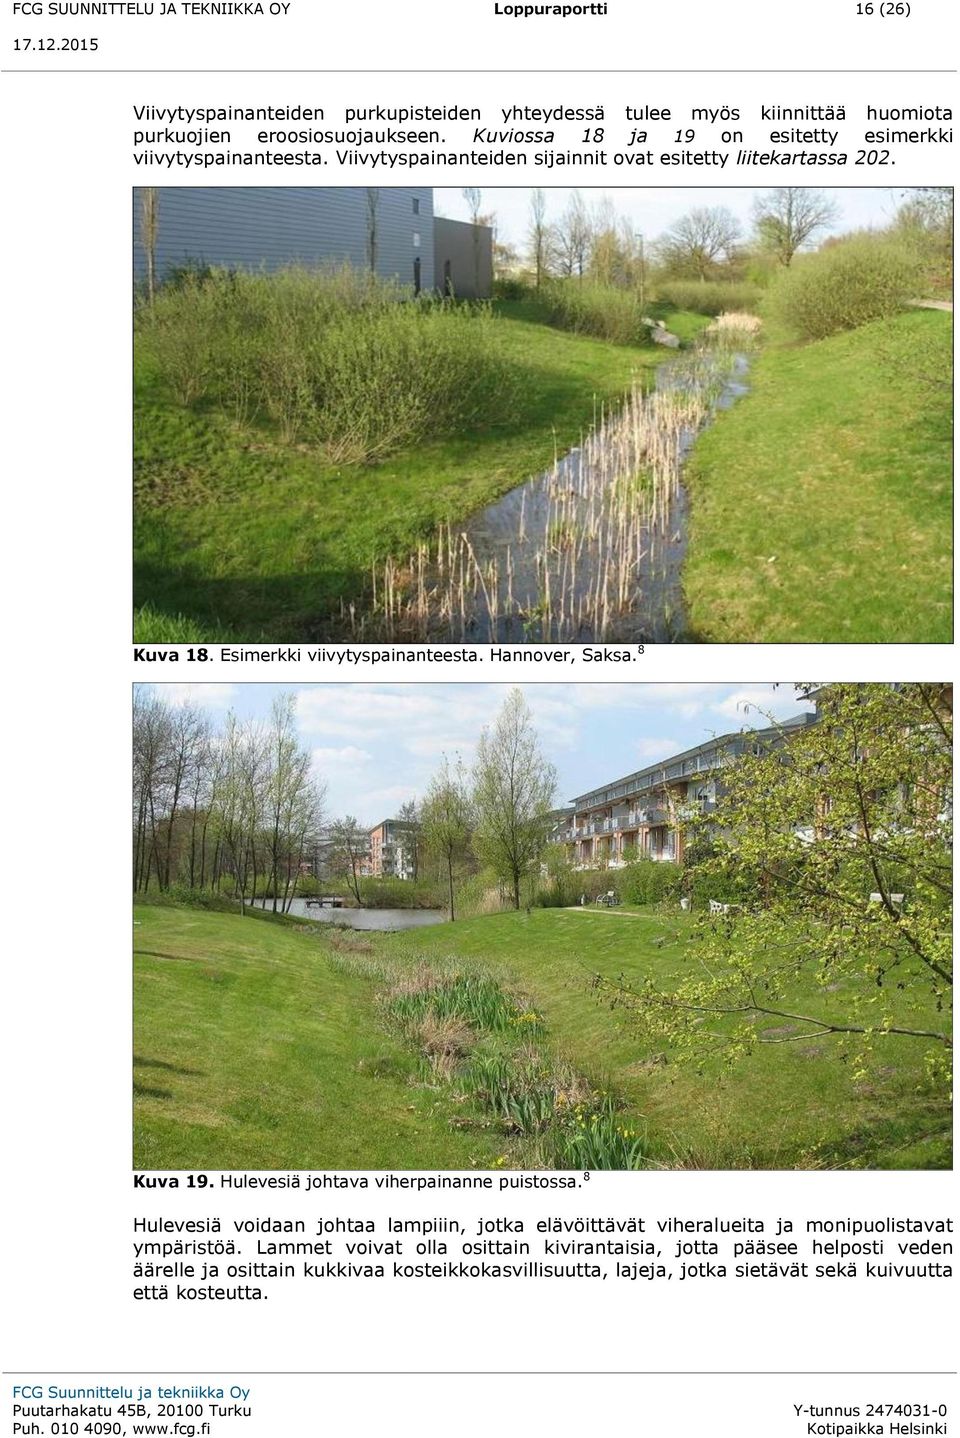 Hannover, Saksa. 8 Kuva 19. Hulevesiä johtava viherpainanne puistossa. 8 Hulevesiä voidaan johtaa lampiiin, jotka elävöittävät viheralueita ja monipuolistavat ympäristöä.